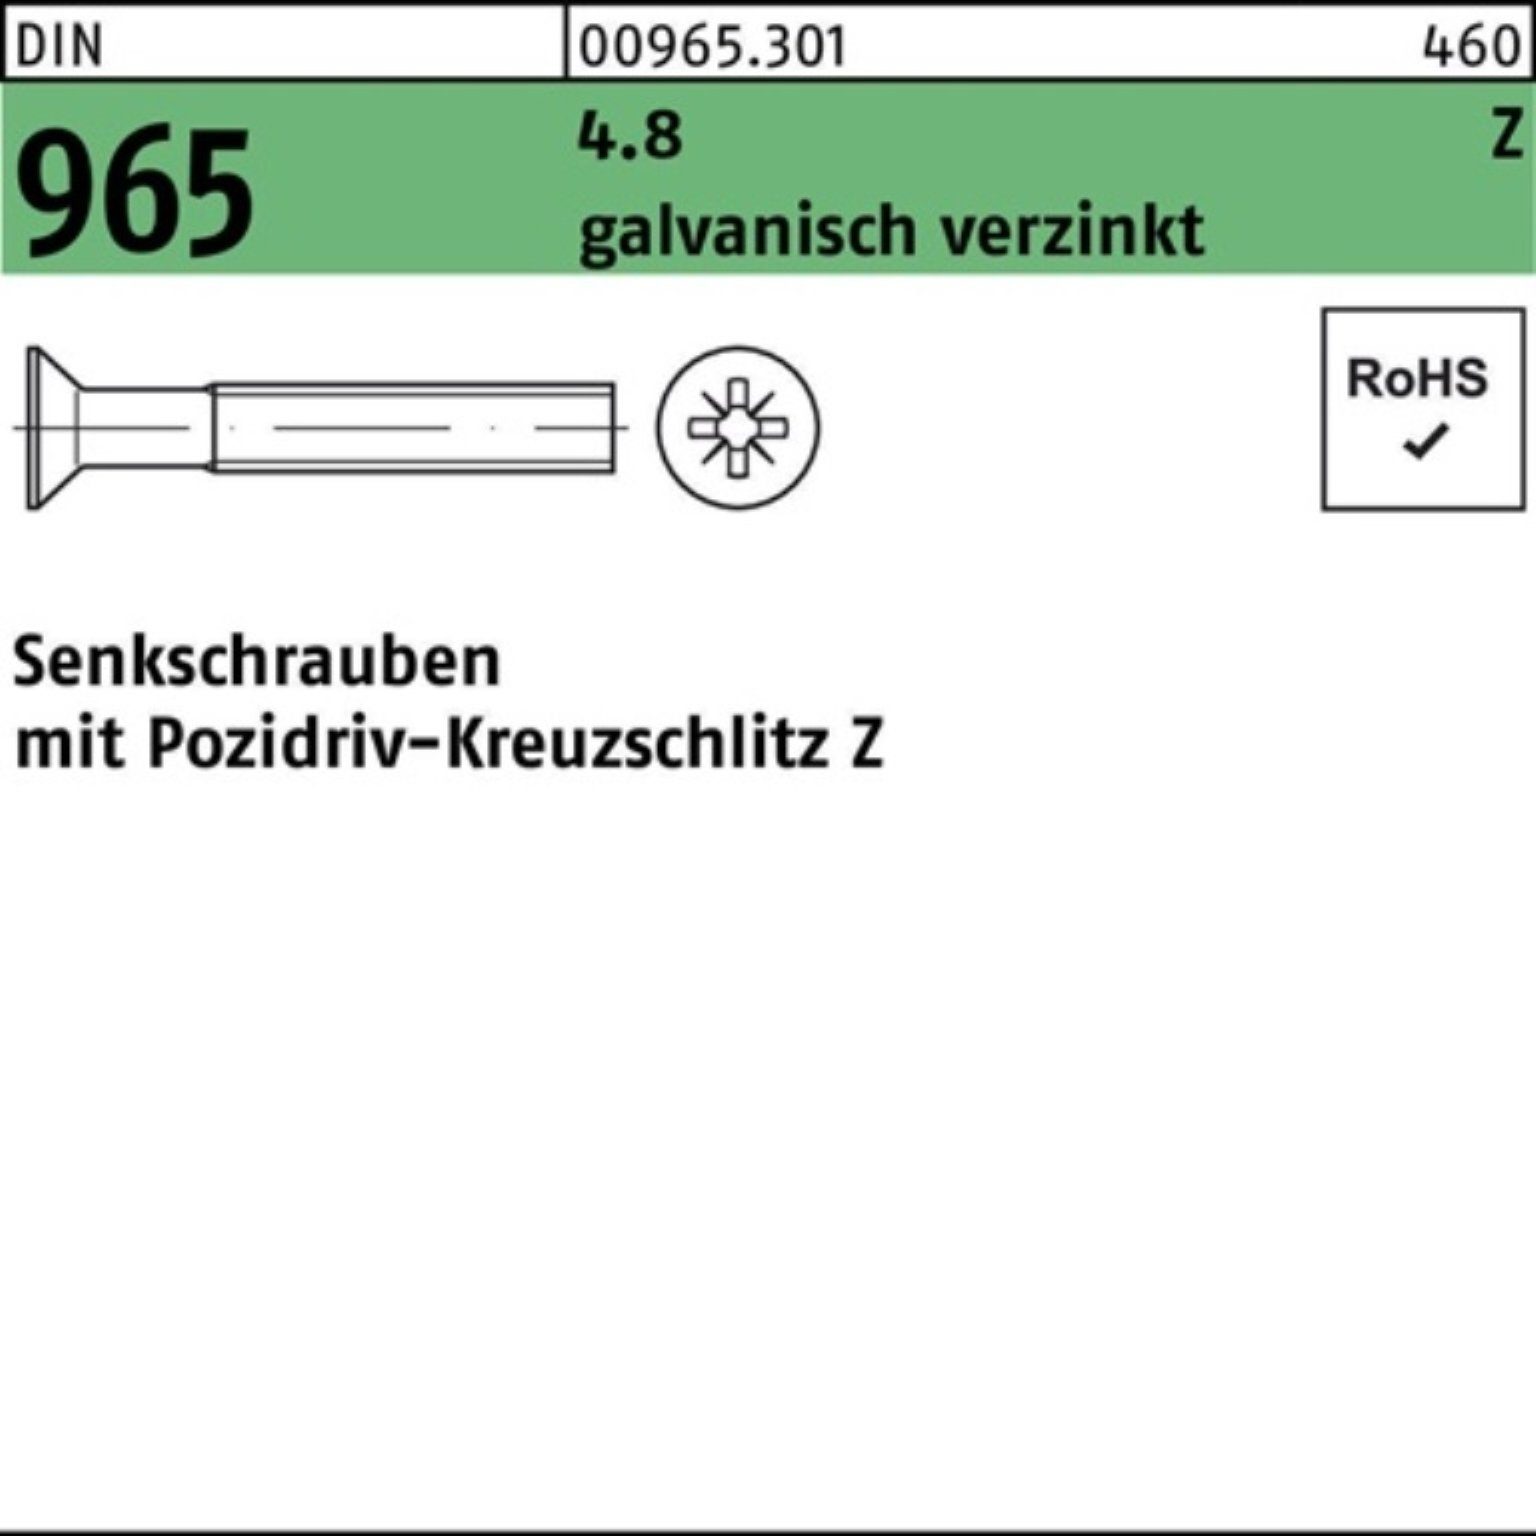 Reyher Senkschraube 200er DIN DIN Senkschraube 965 M6x 45-Z Pack 4.8 PZ galv.verz. 200St